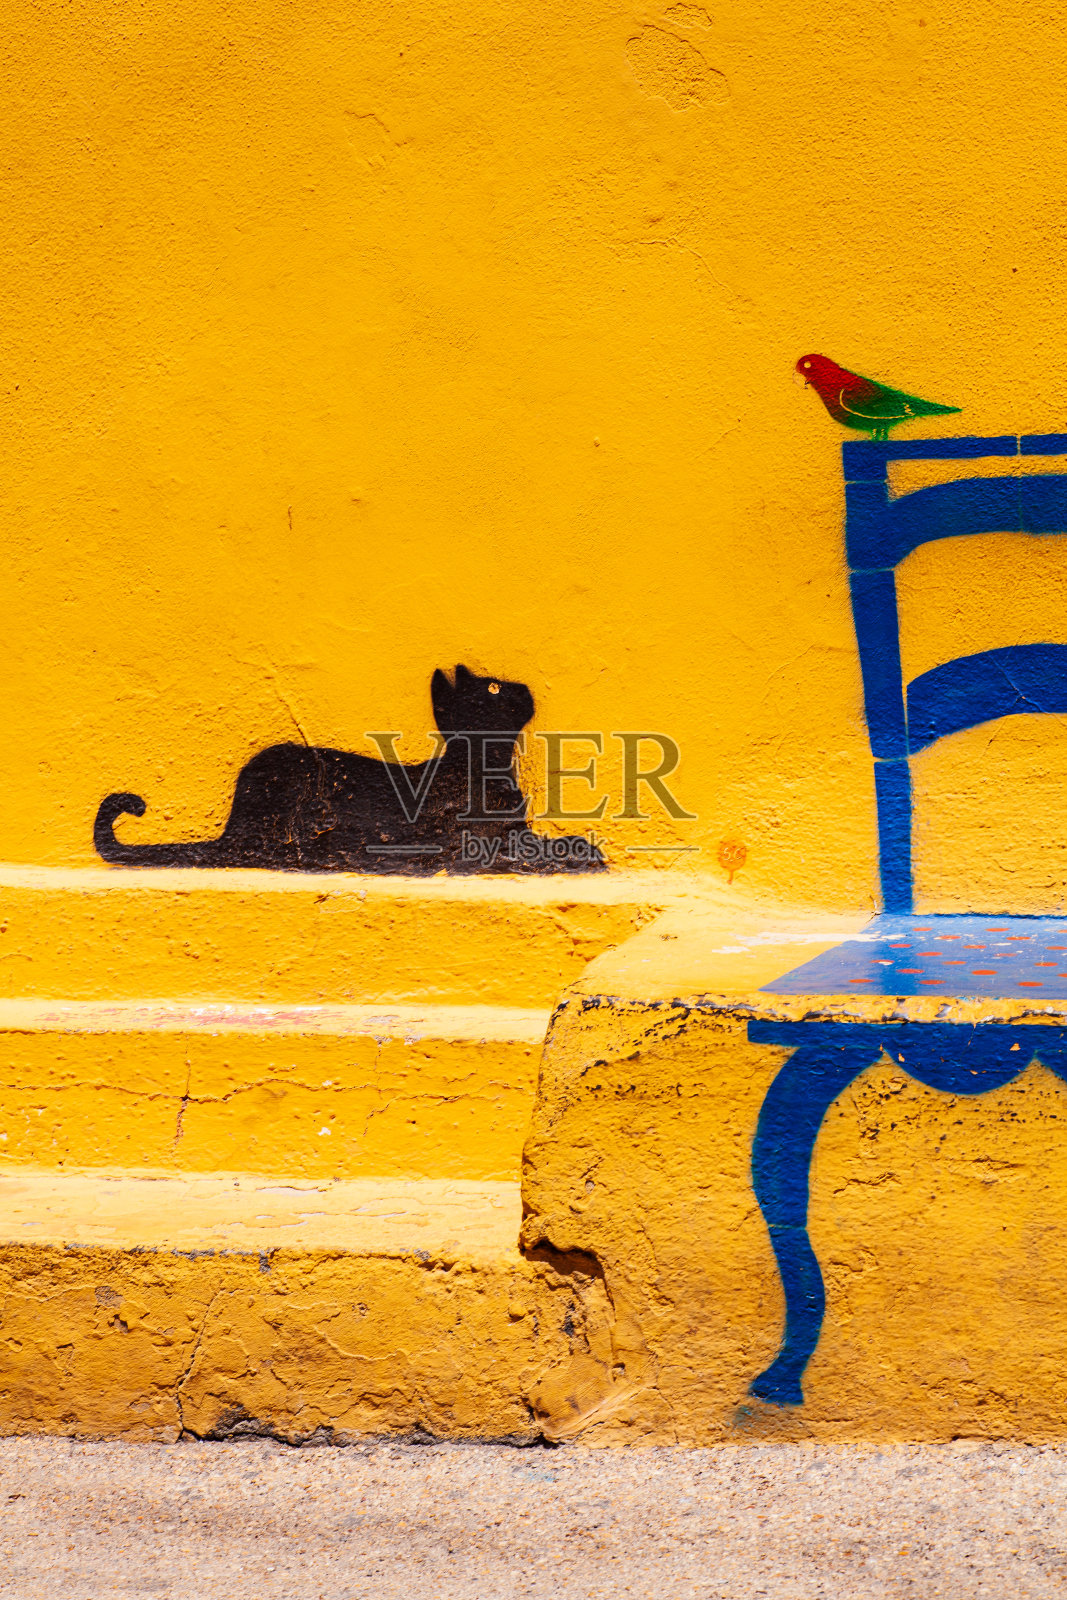 Linosa的墙上有一幅著名的插画:一只猫看着一只坐在椅子上的鸟照片摄影图片